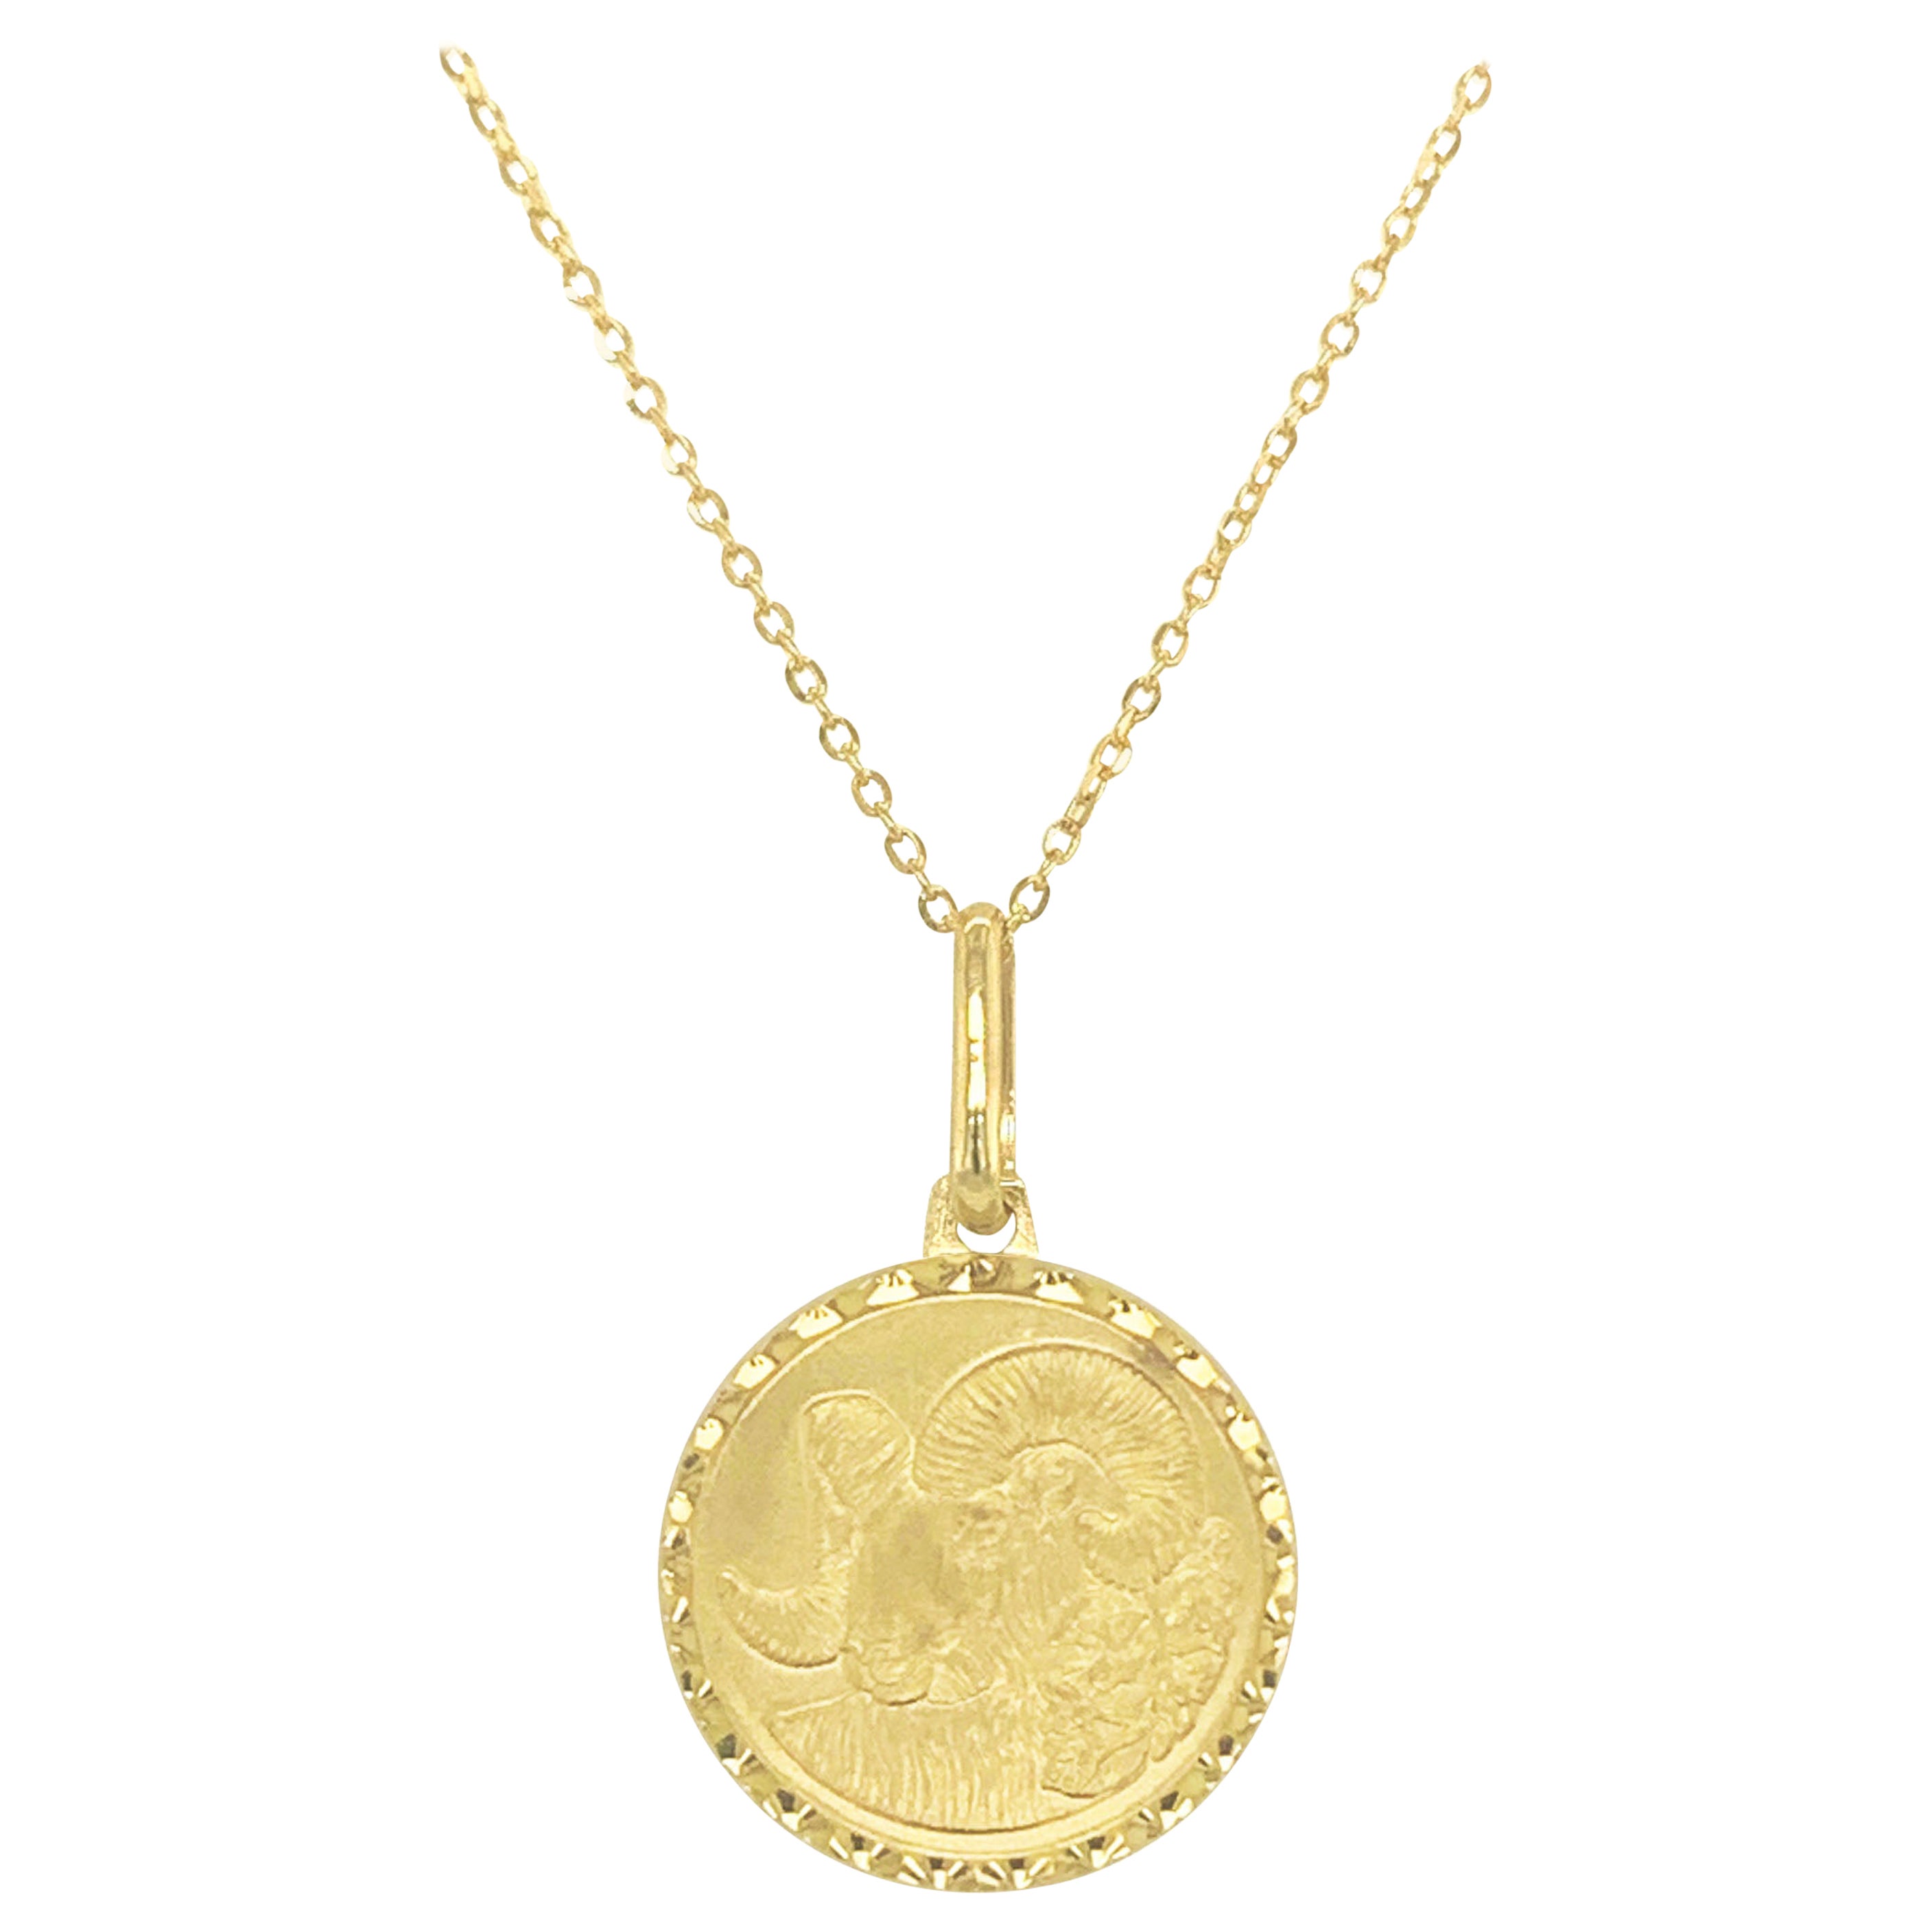 Collier pendentif signe du zodiaque en or jaune 14 carats, Aries